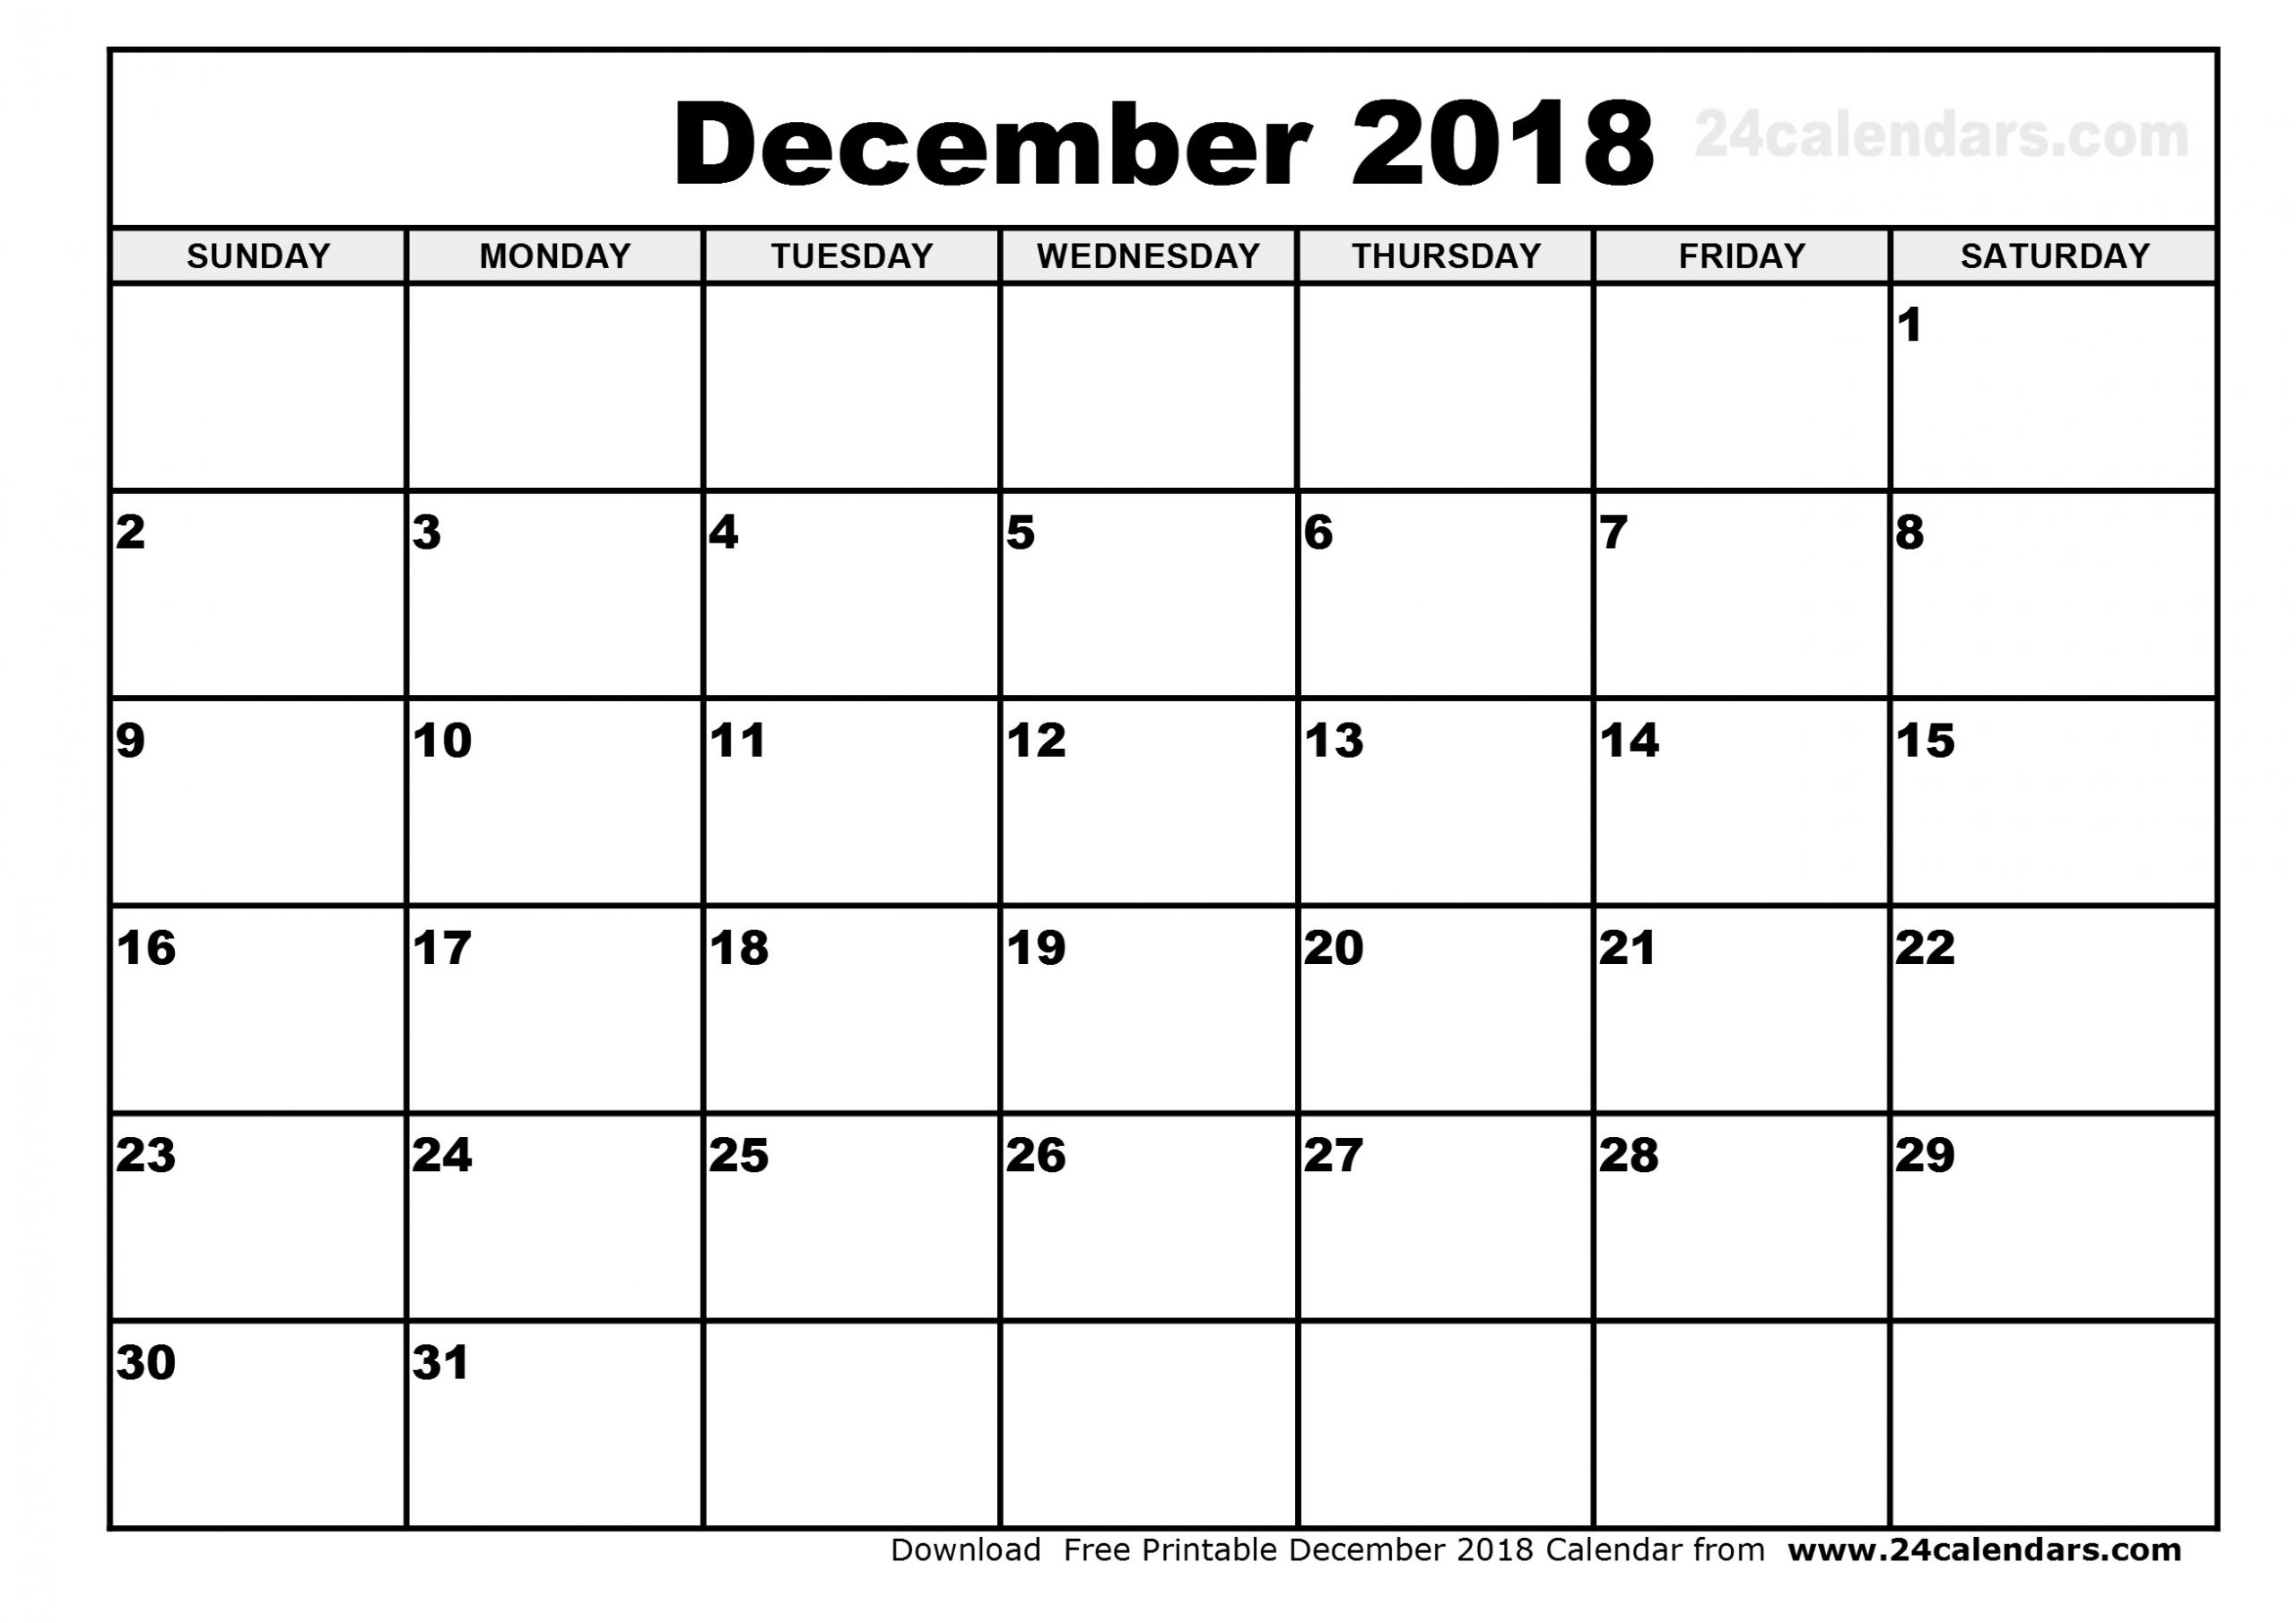 December 2018 Calendar With Julian Dates | Calendar Template